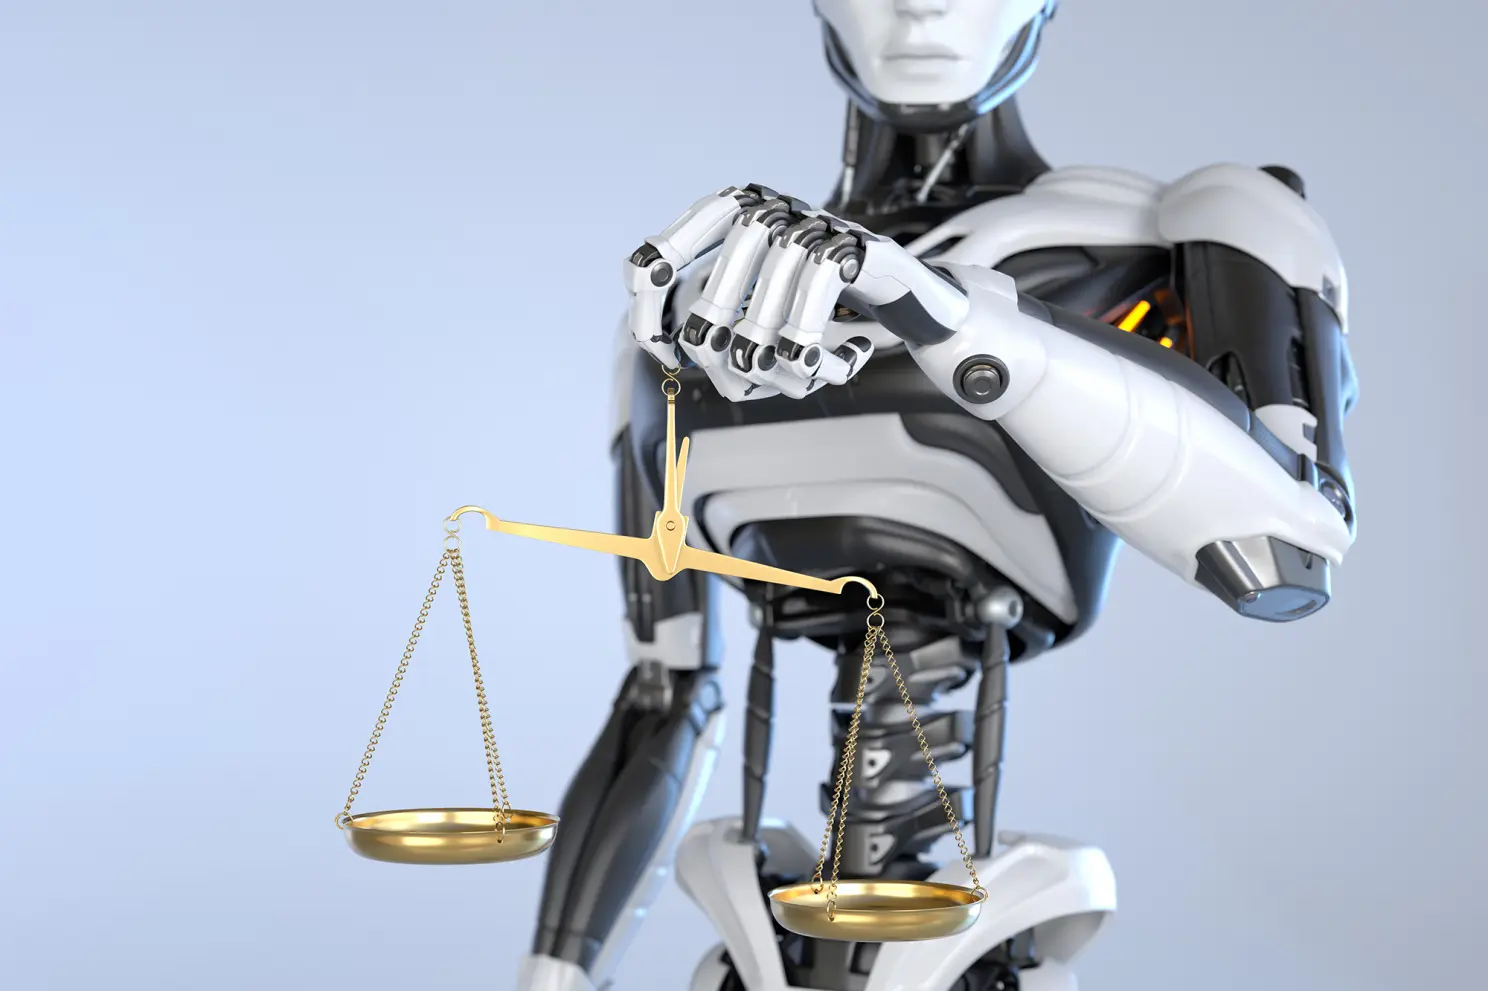 Tư vấn pháp lý sẽ là lĩnh vực tiếp theo chứng kiến sự phát triển của công nghệ trí tuệ nhân tạo. Ảnh: Getty Images.